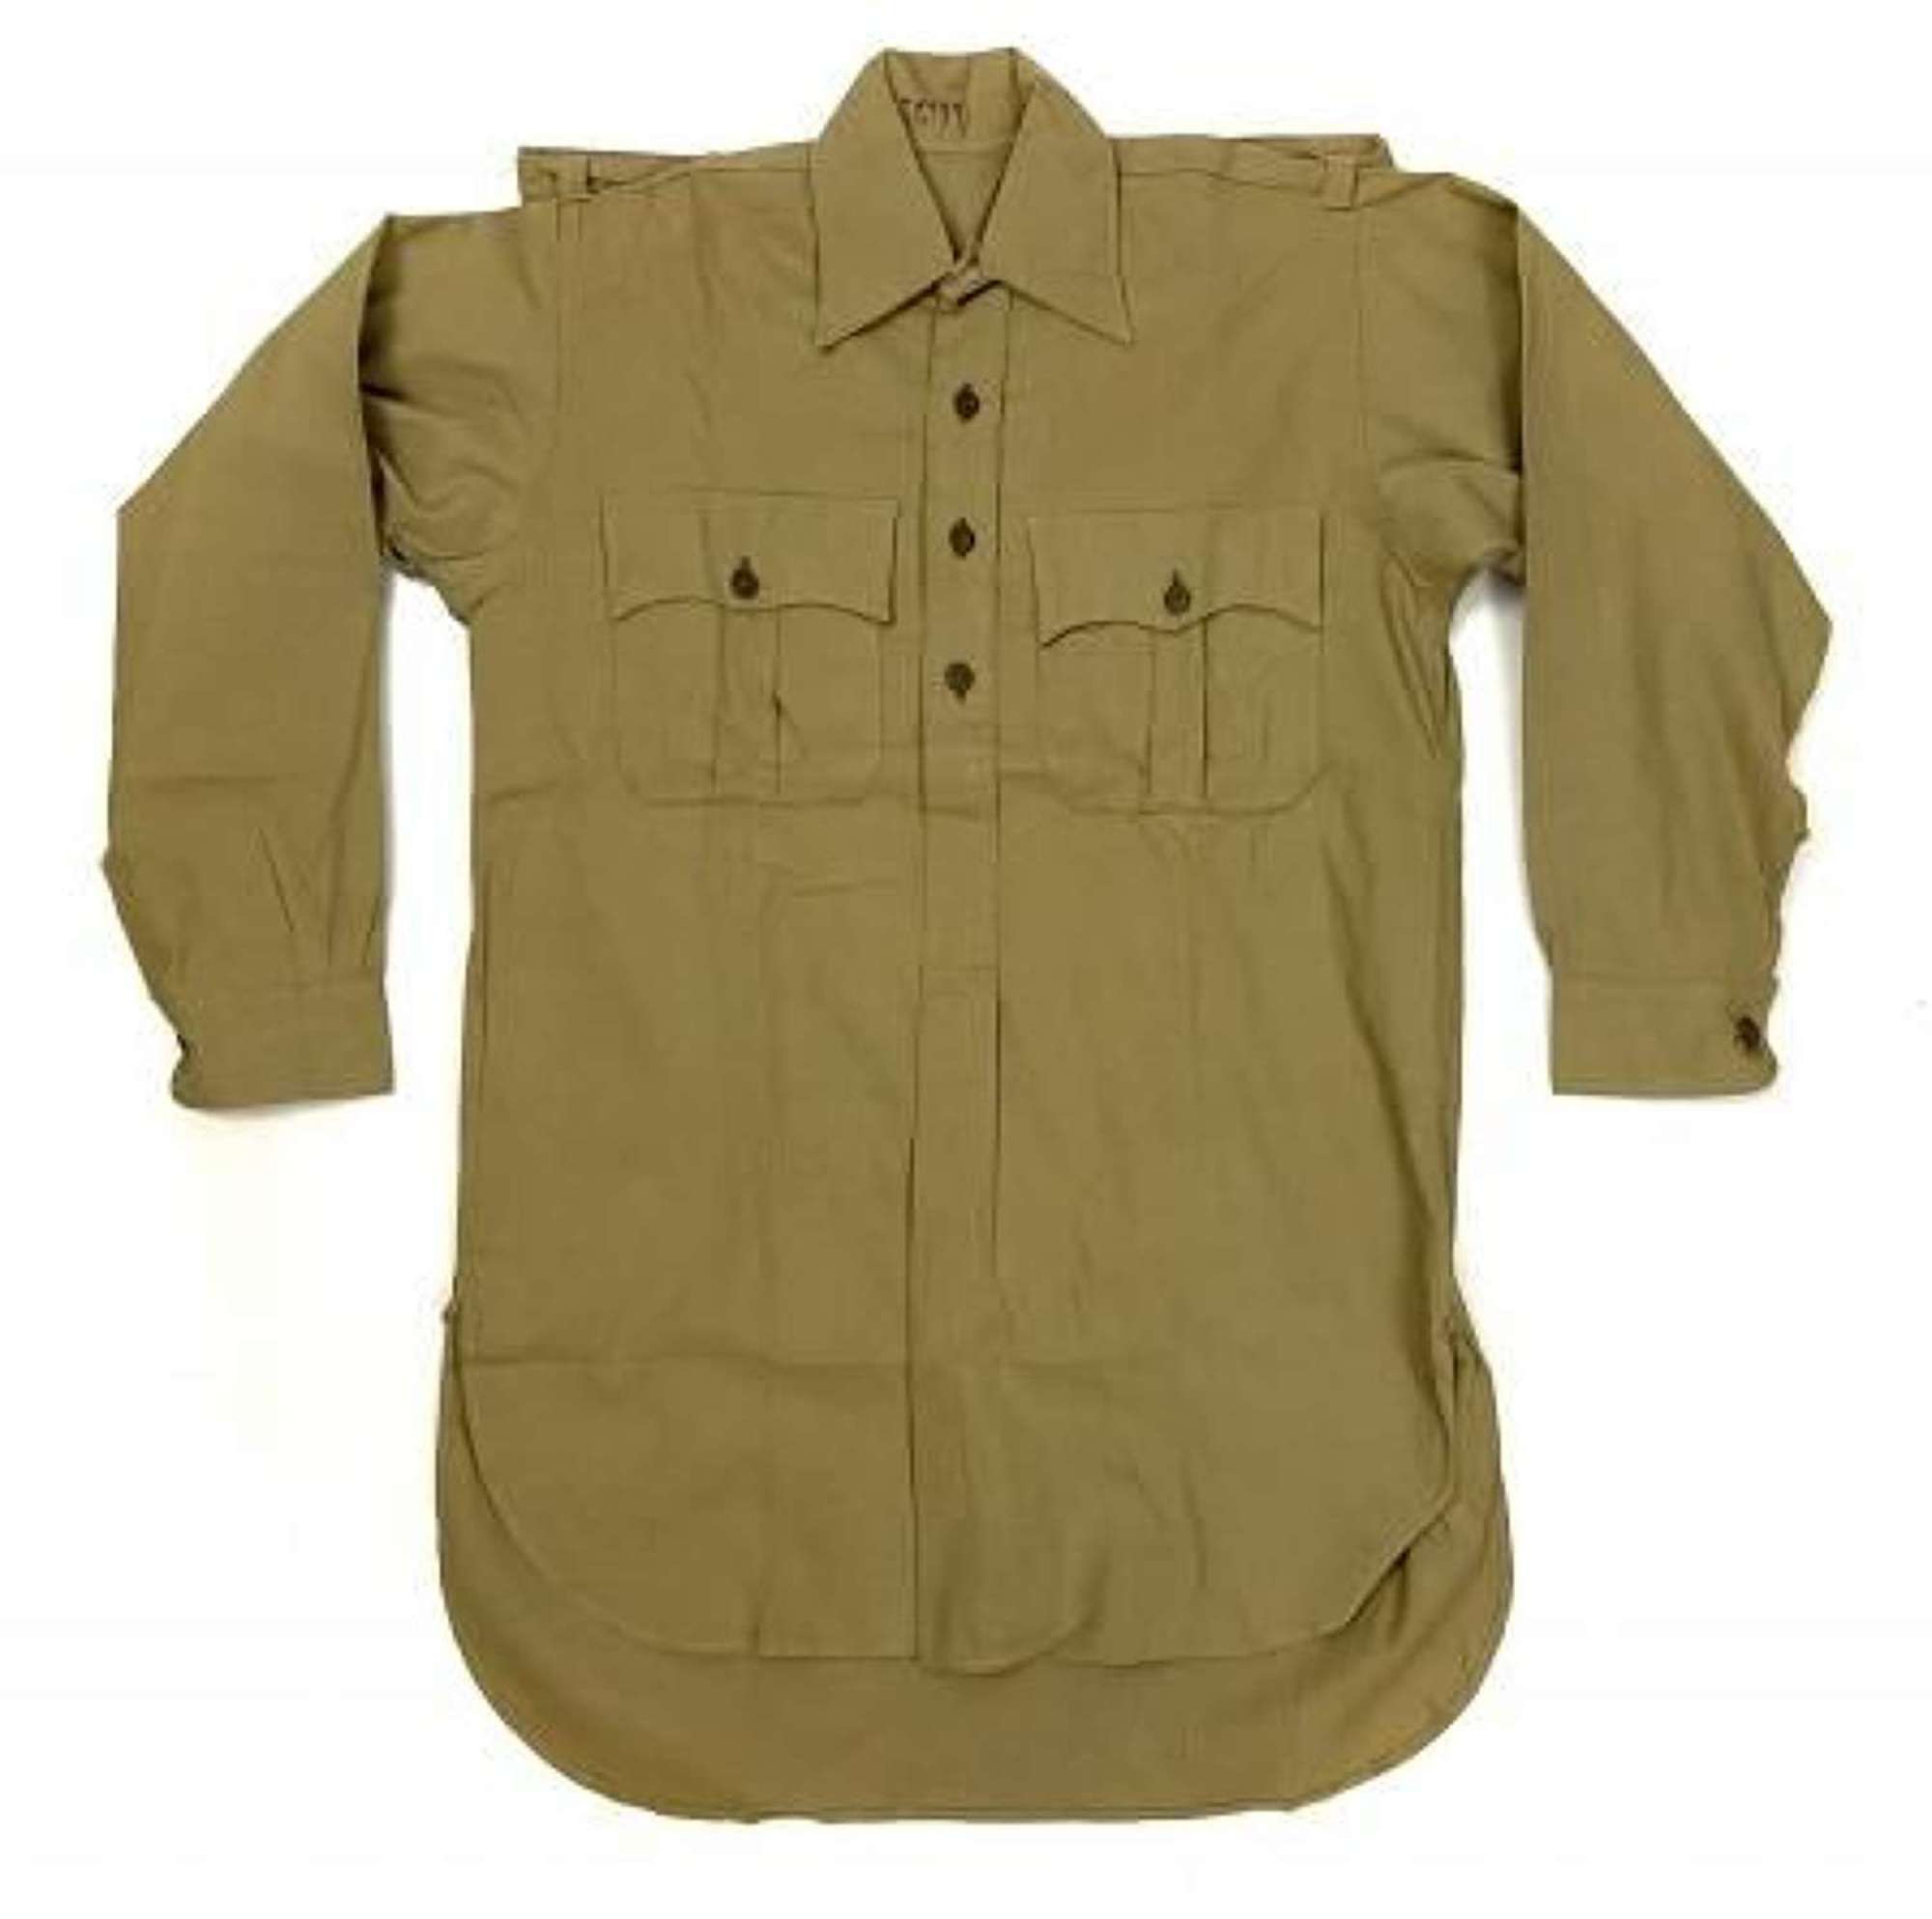 Rare original 1941 Dated British Army Khaki Drill Shirt